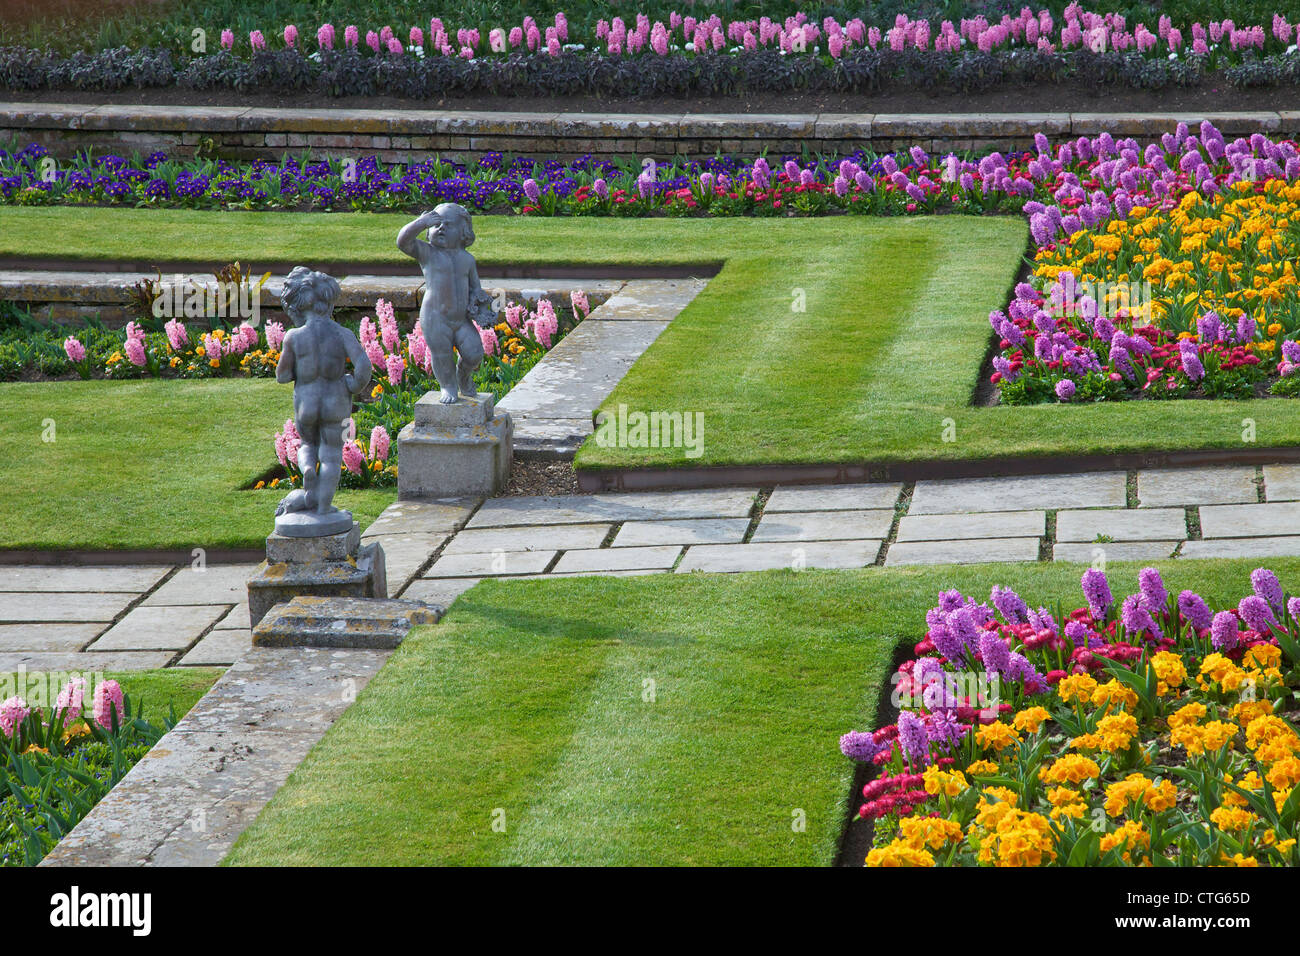 Formale Gärten, Hampton Court Palace, London, Surrey, England, UK, Vereinigtes Königreich, GB, Großbritannien, britische Inseln, Europa Stockfoto